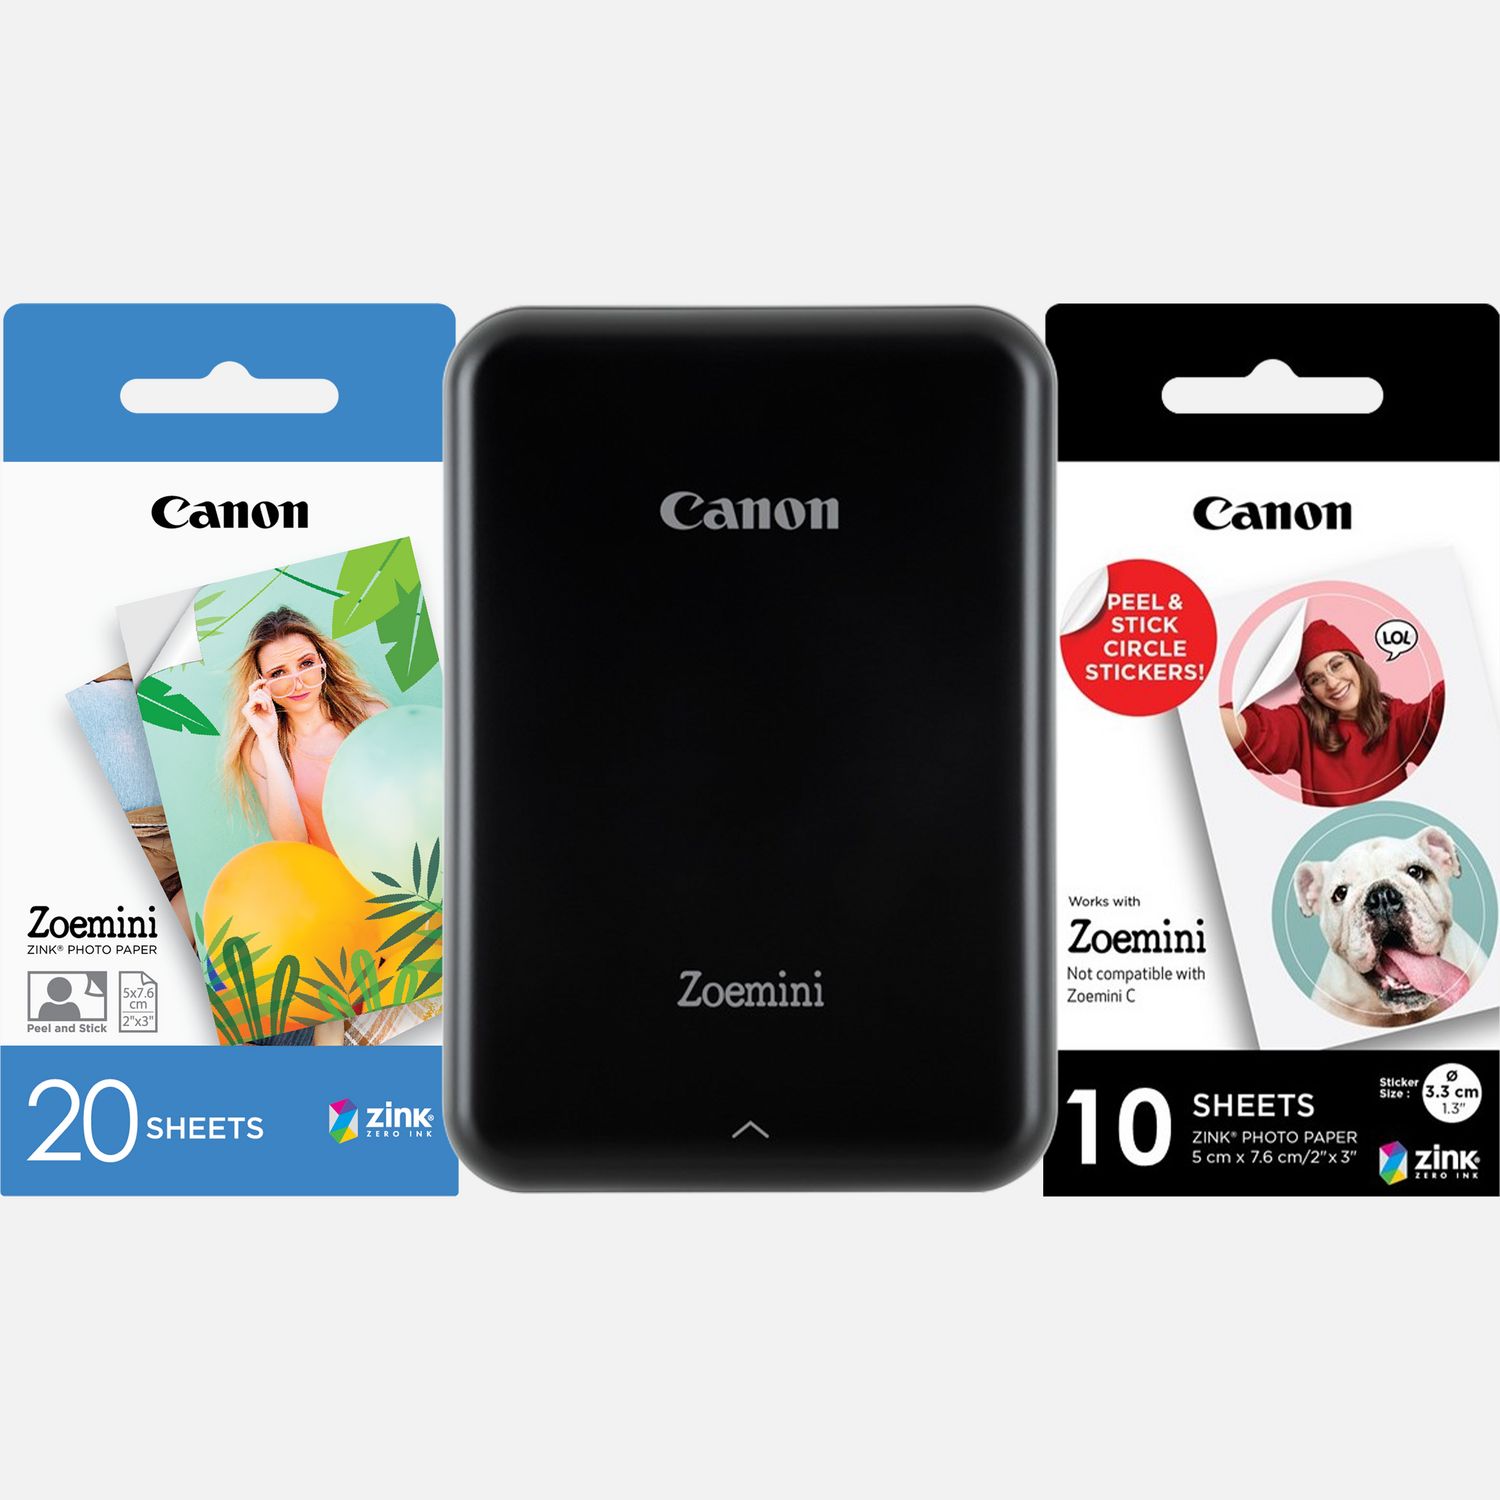 Image of Fotocamera istantanea a colori portatile Canon Zoemini, nera + 20 fogli di carta fotografica 2 x 3" + 10 fogli di carta adesiva a tondini